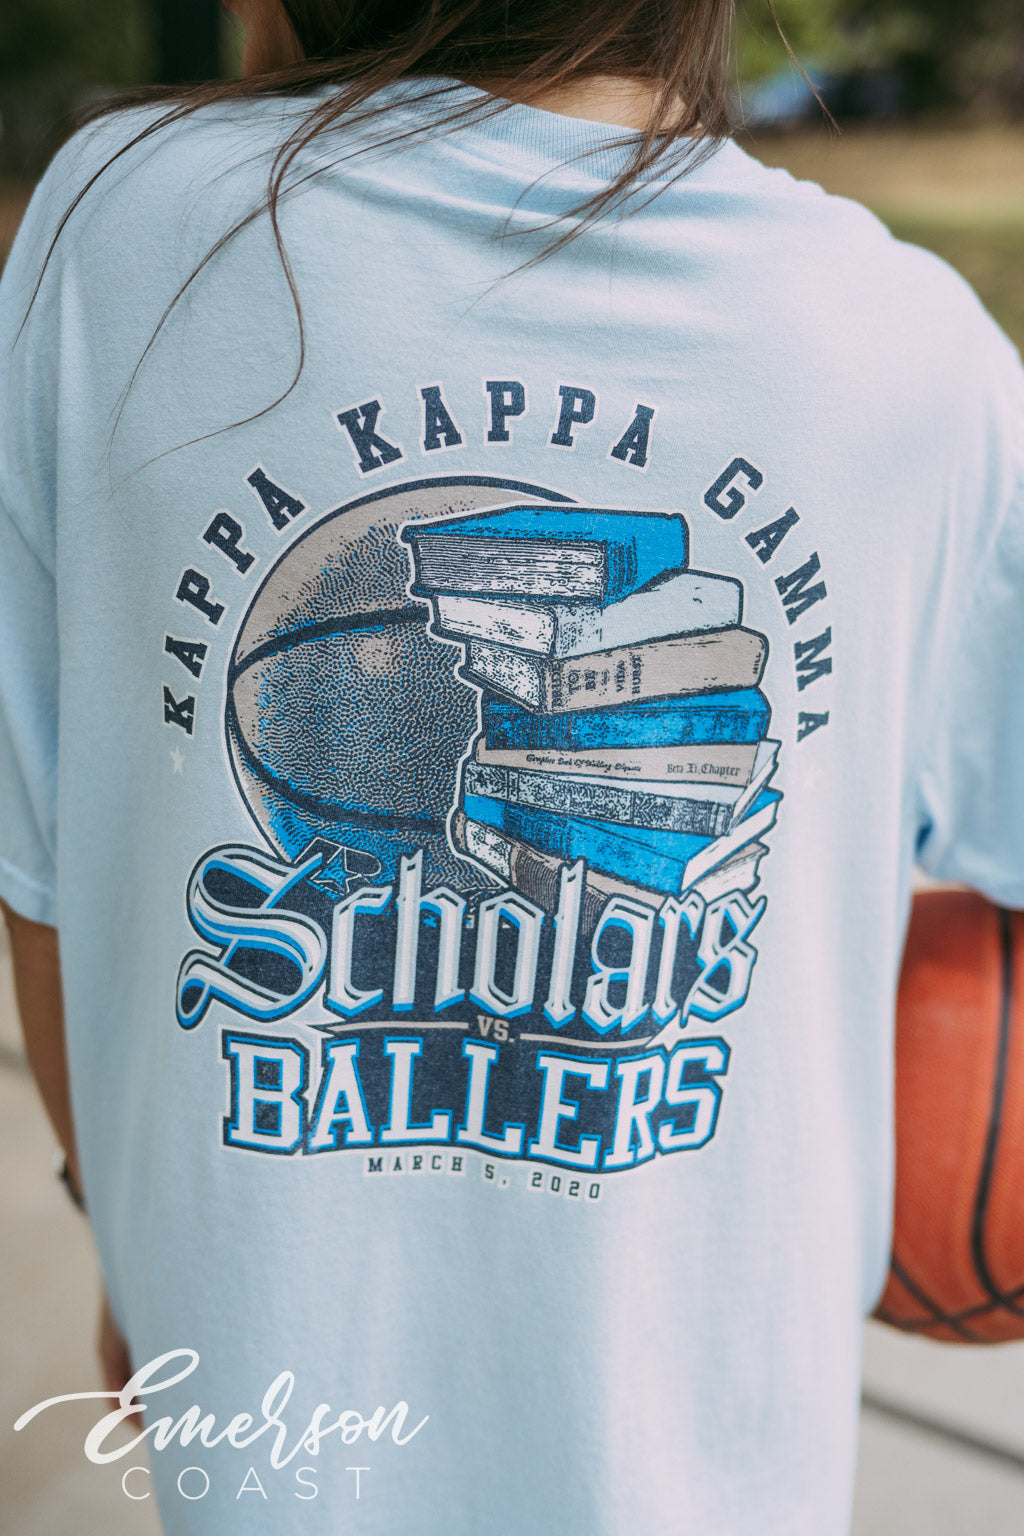 Kappa Scholars v Ballers Tshirt